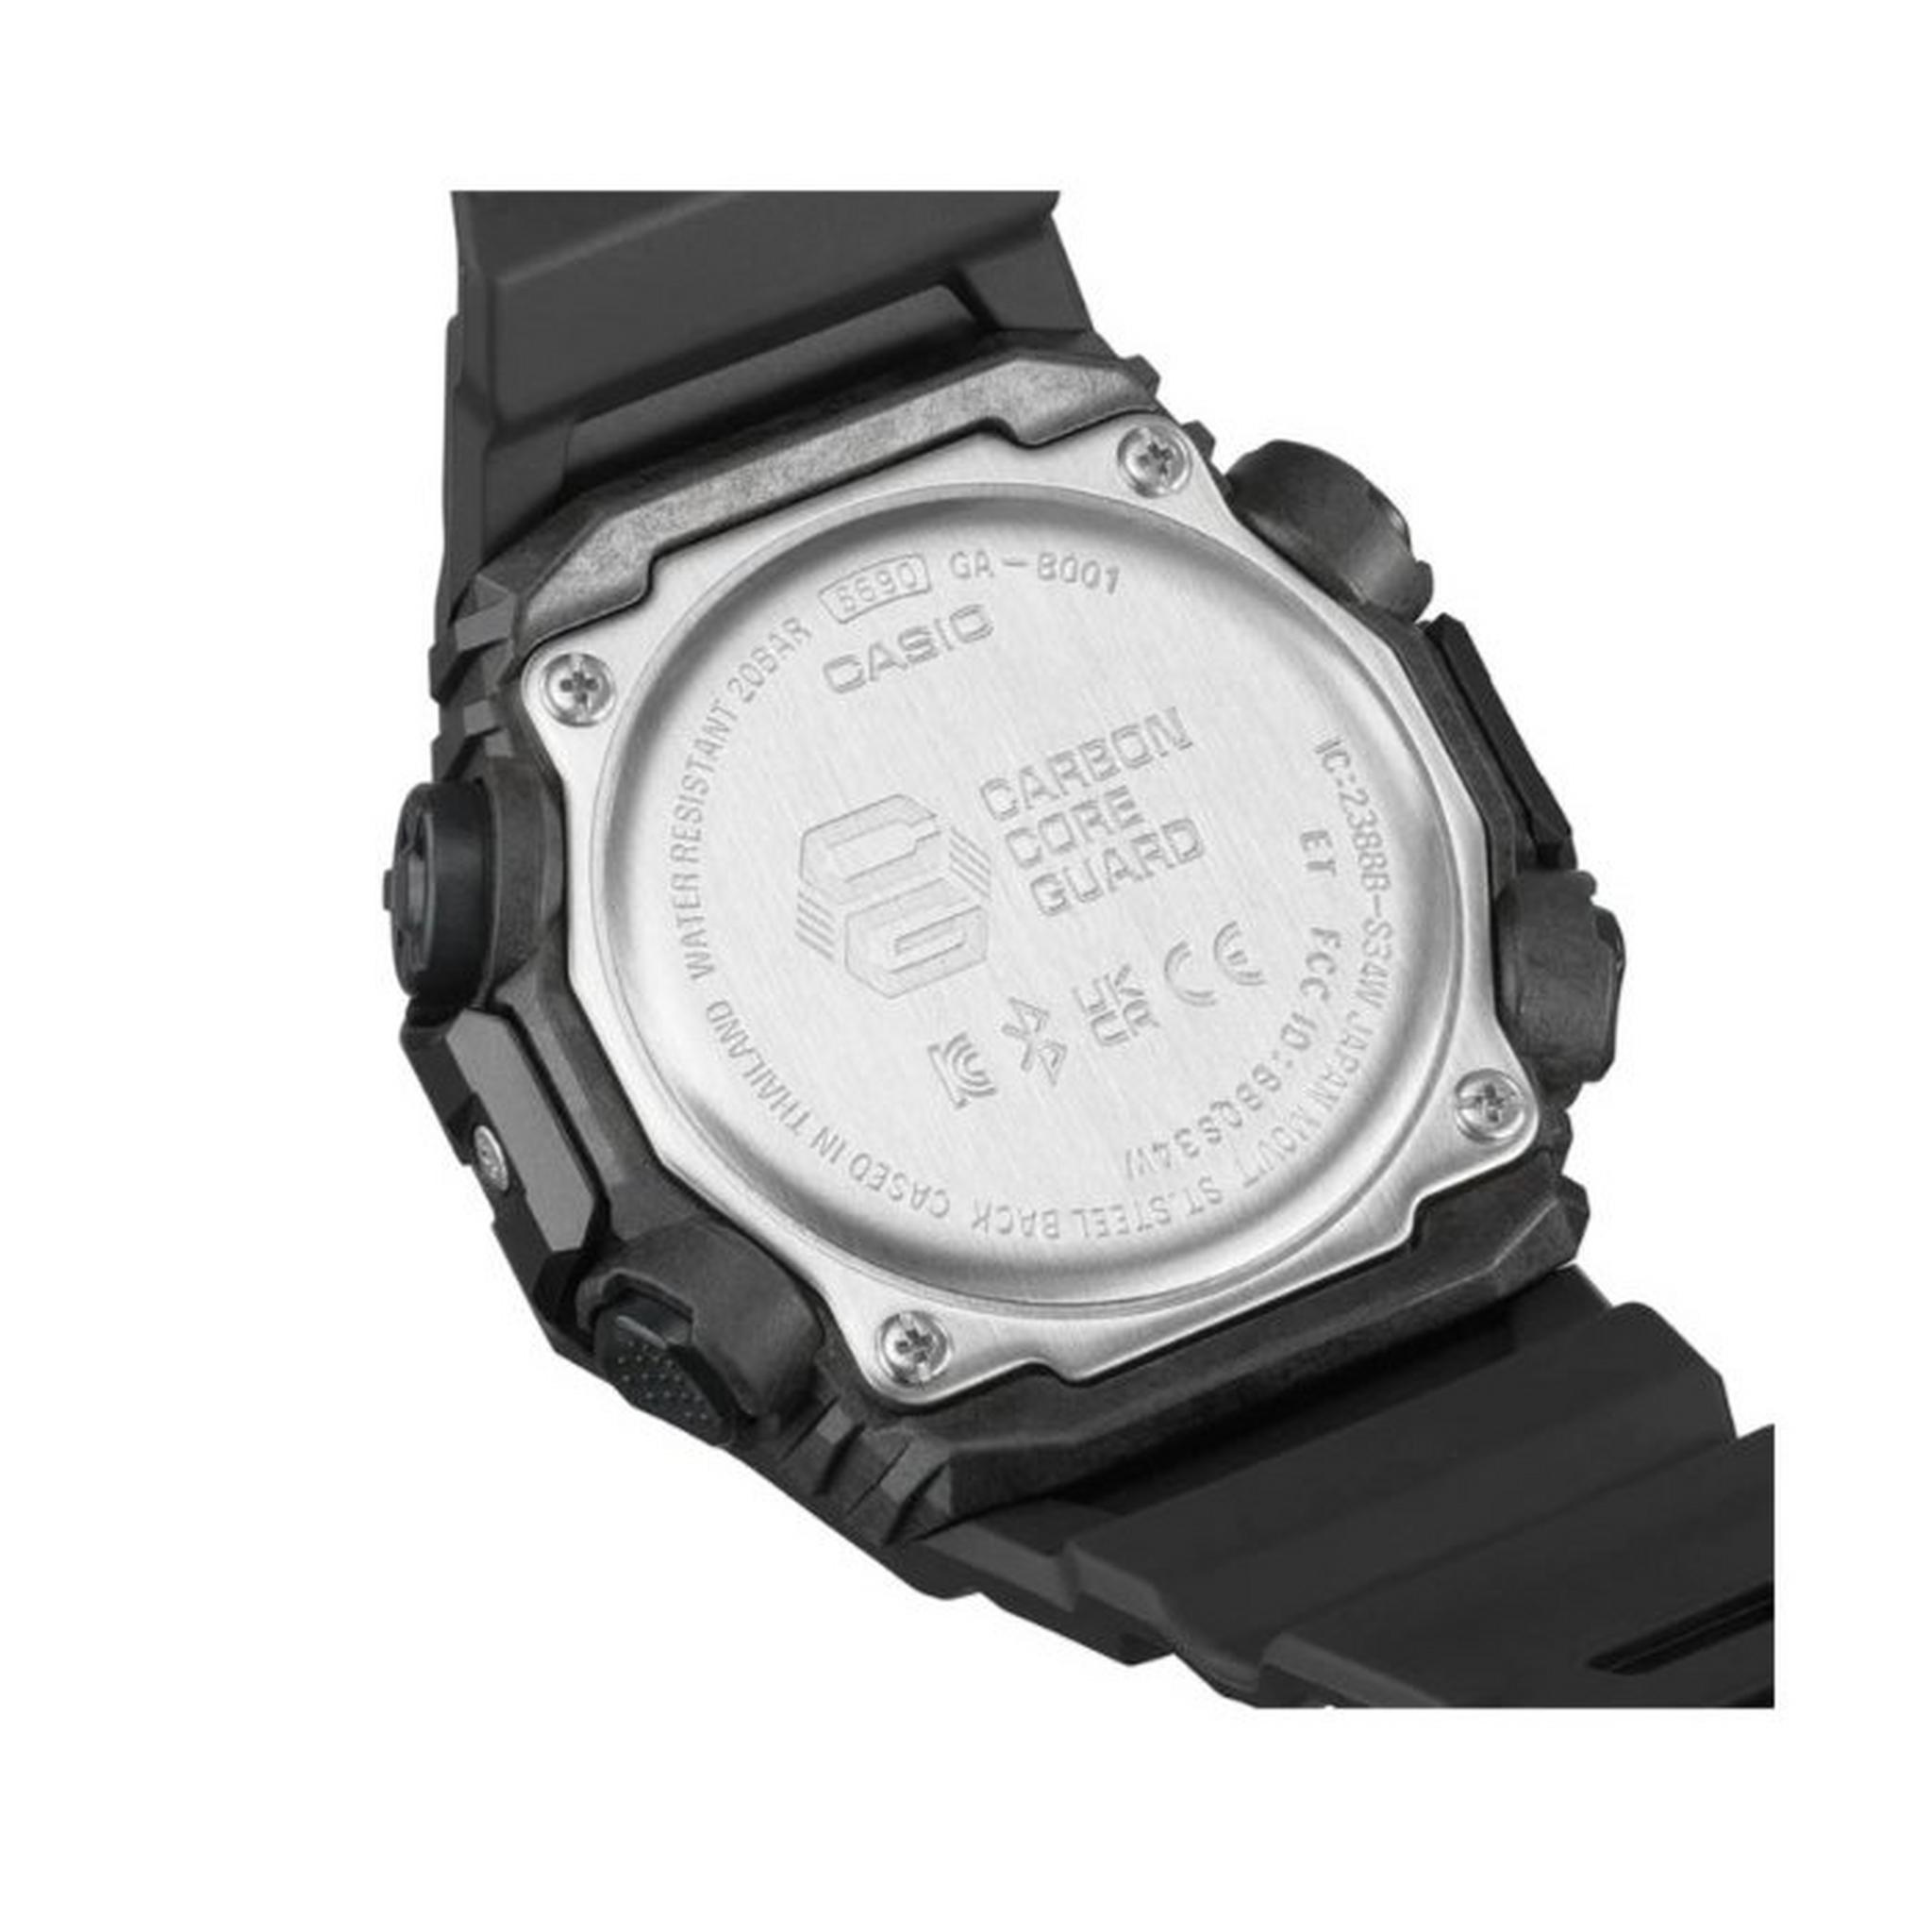 ساعة جي شوك يوث للرجال من كاسيو  ، انالوج / رقمية ، 42 ملم ، GA-B001-1ADR   - أسود